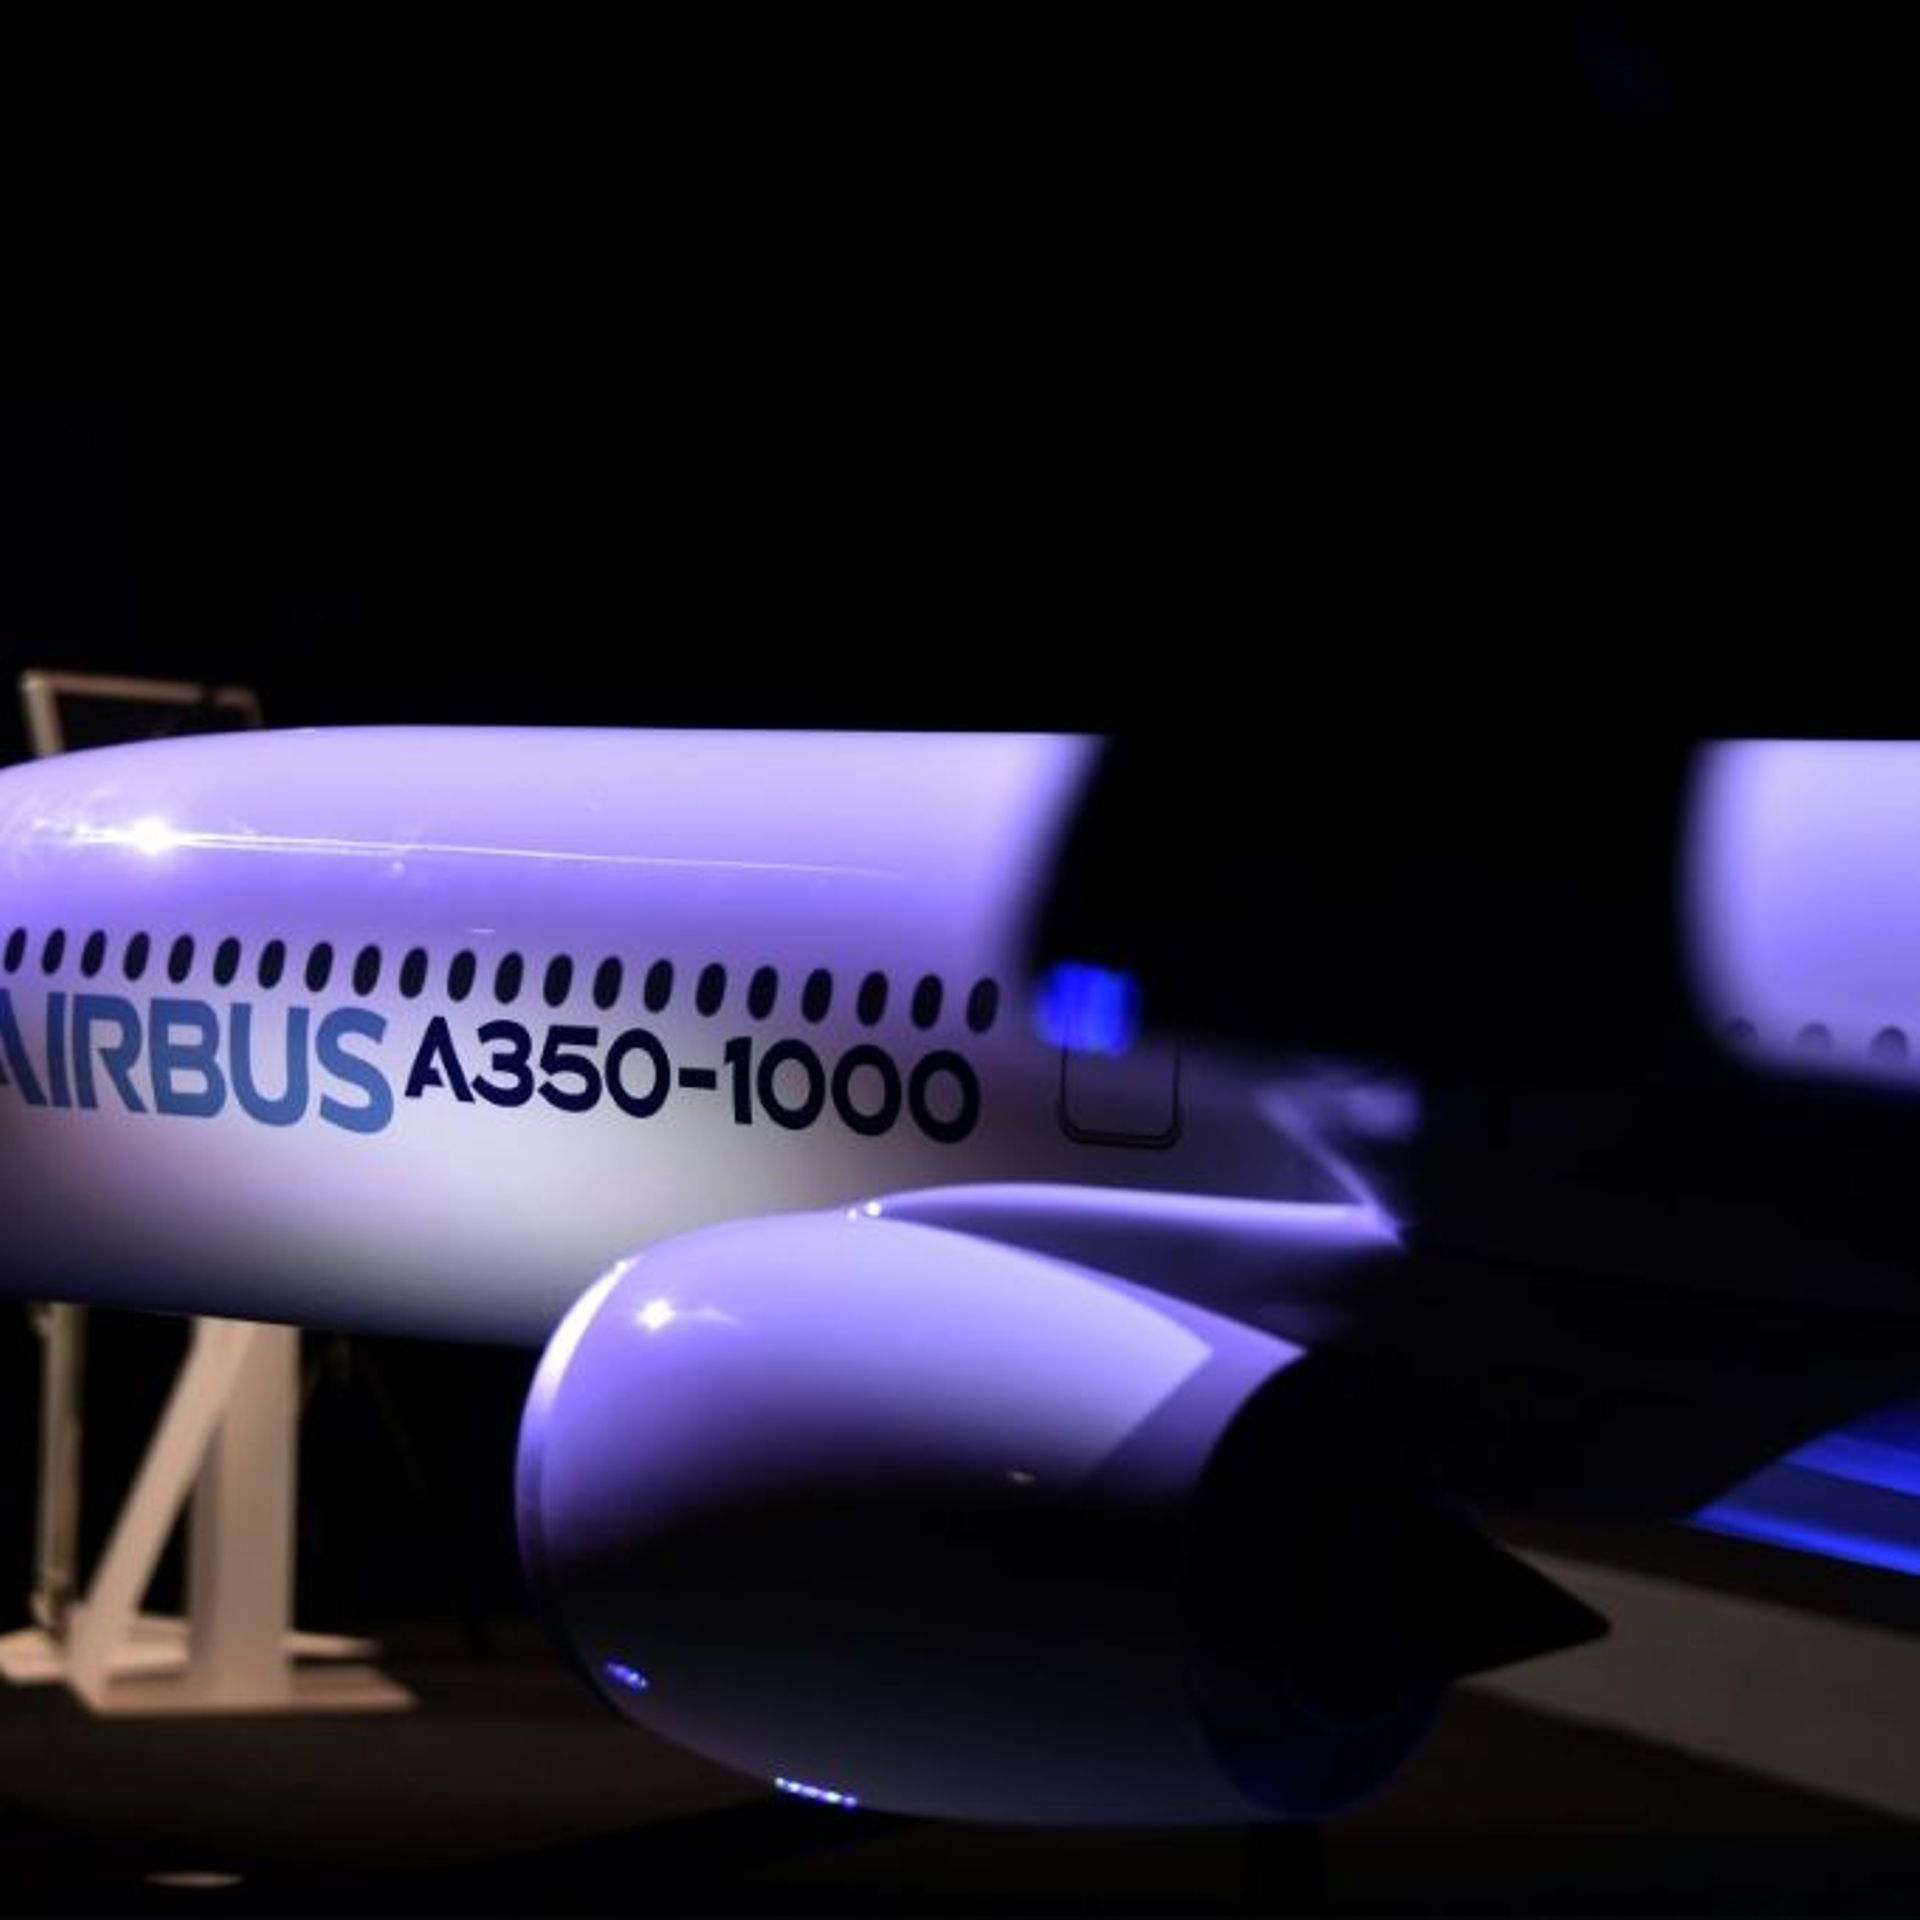 Airbus-Le carnet de commandes atteint un niveau record en 2023